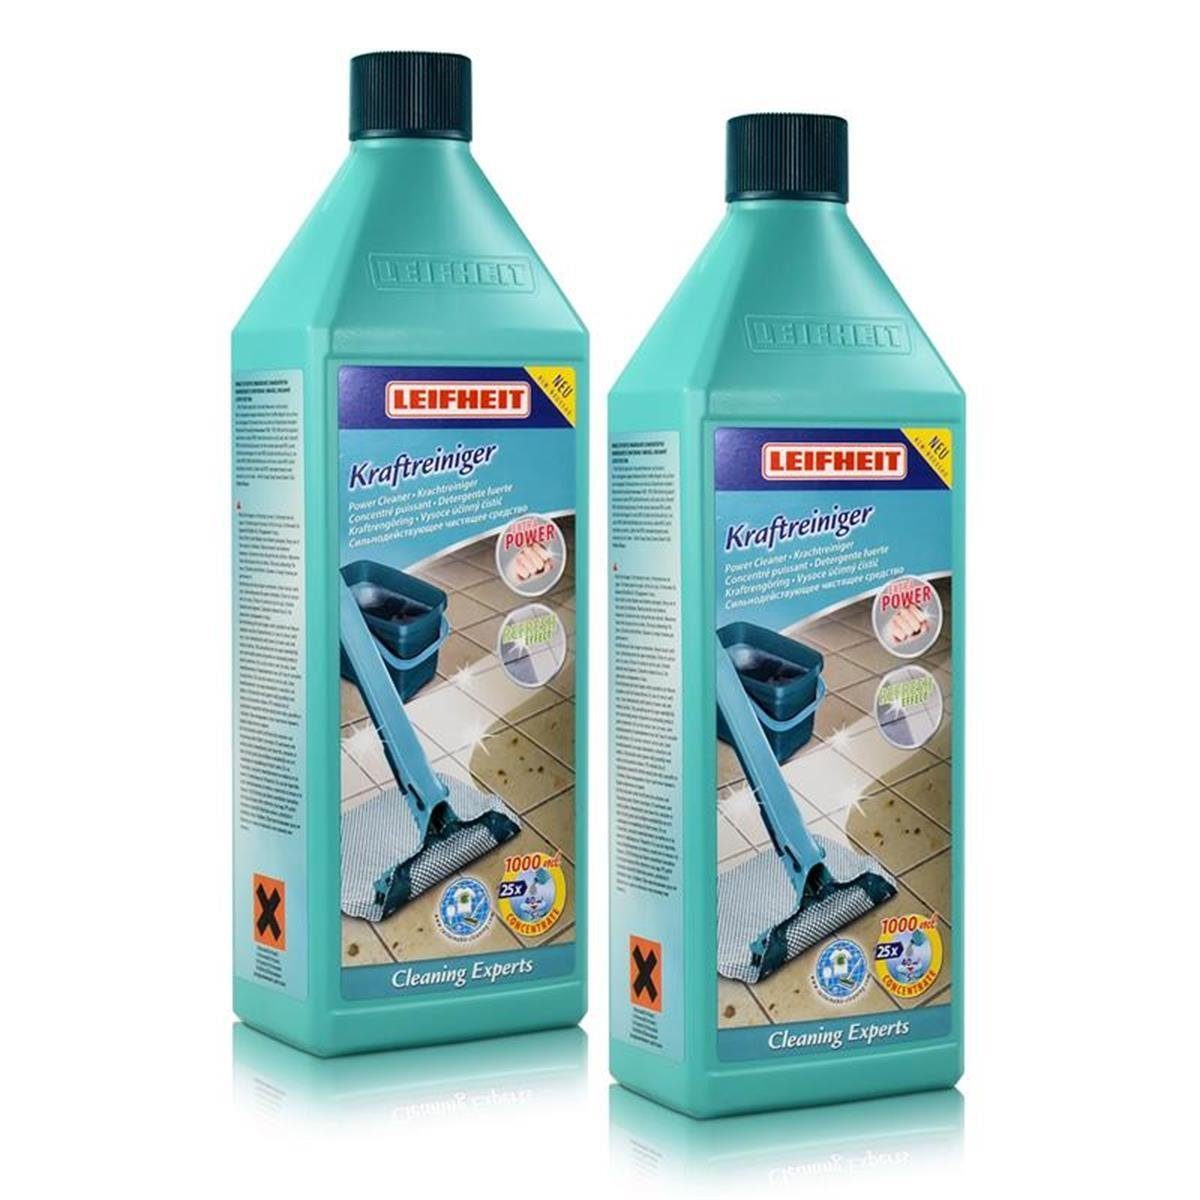 Leifheit 2x Leifheit Kraftreiniger Cleaning Experts 1 L Fussbodenreiniger